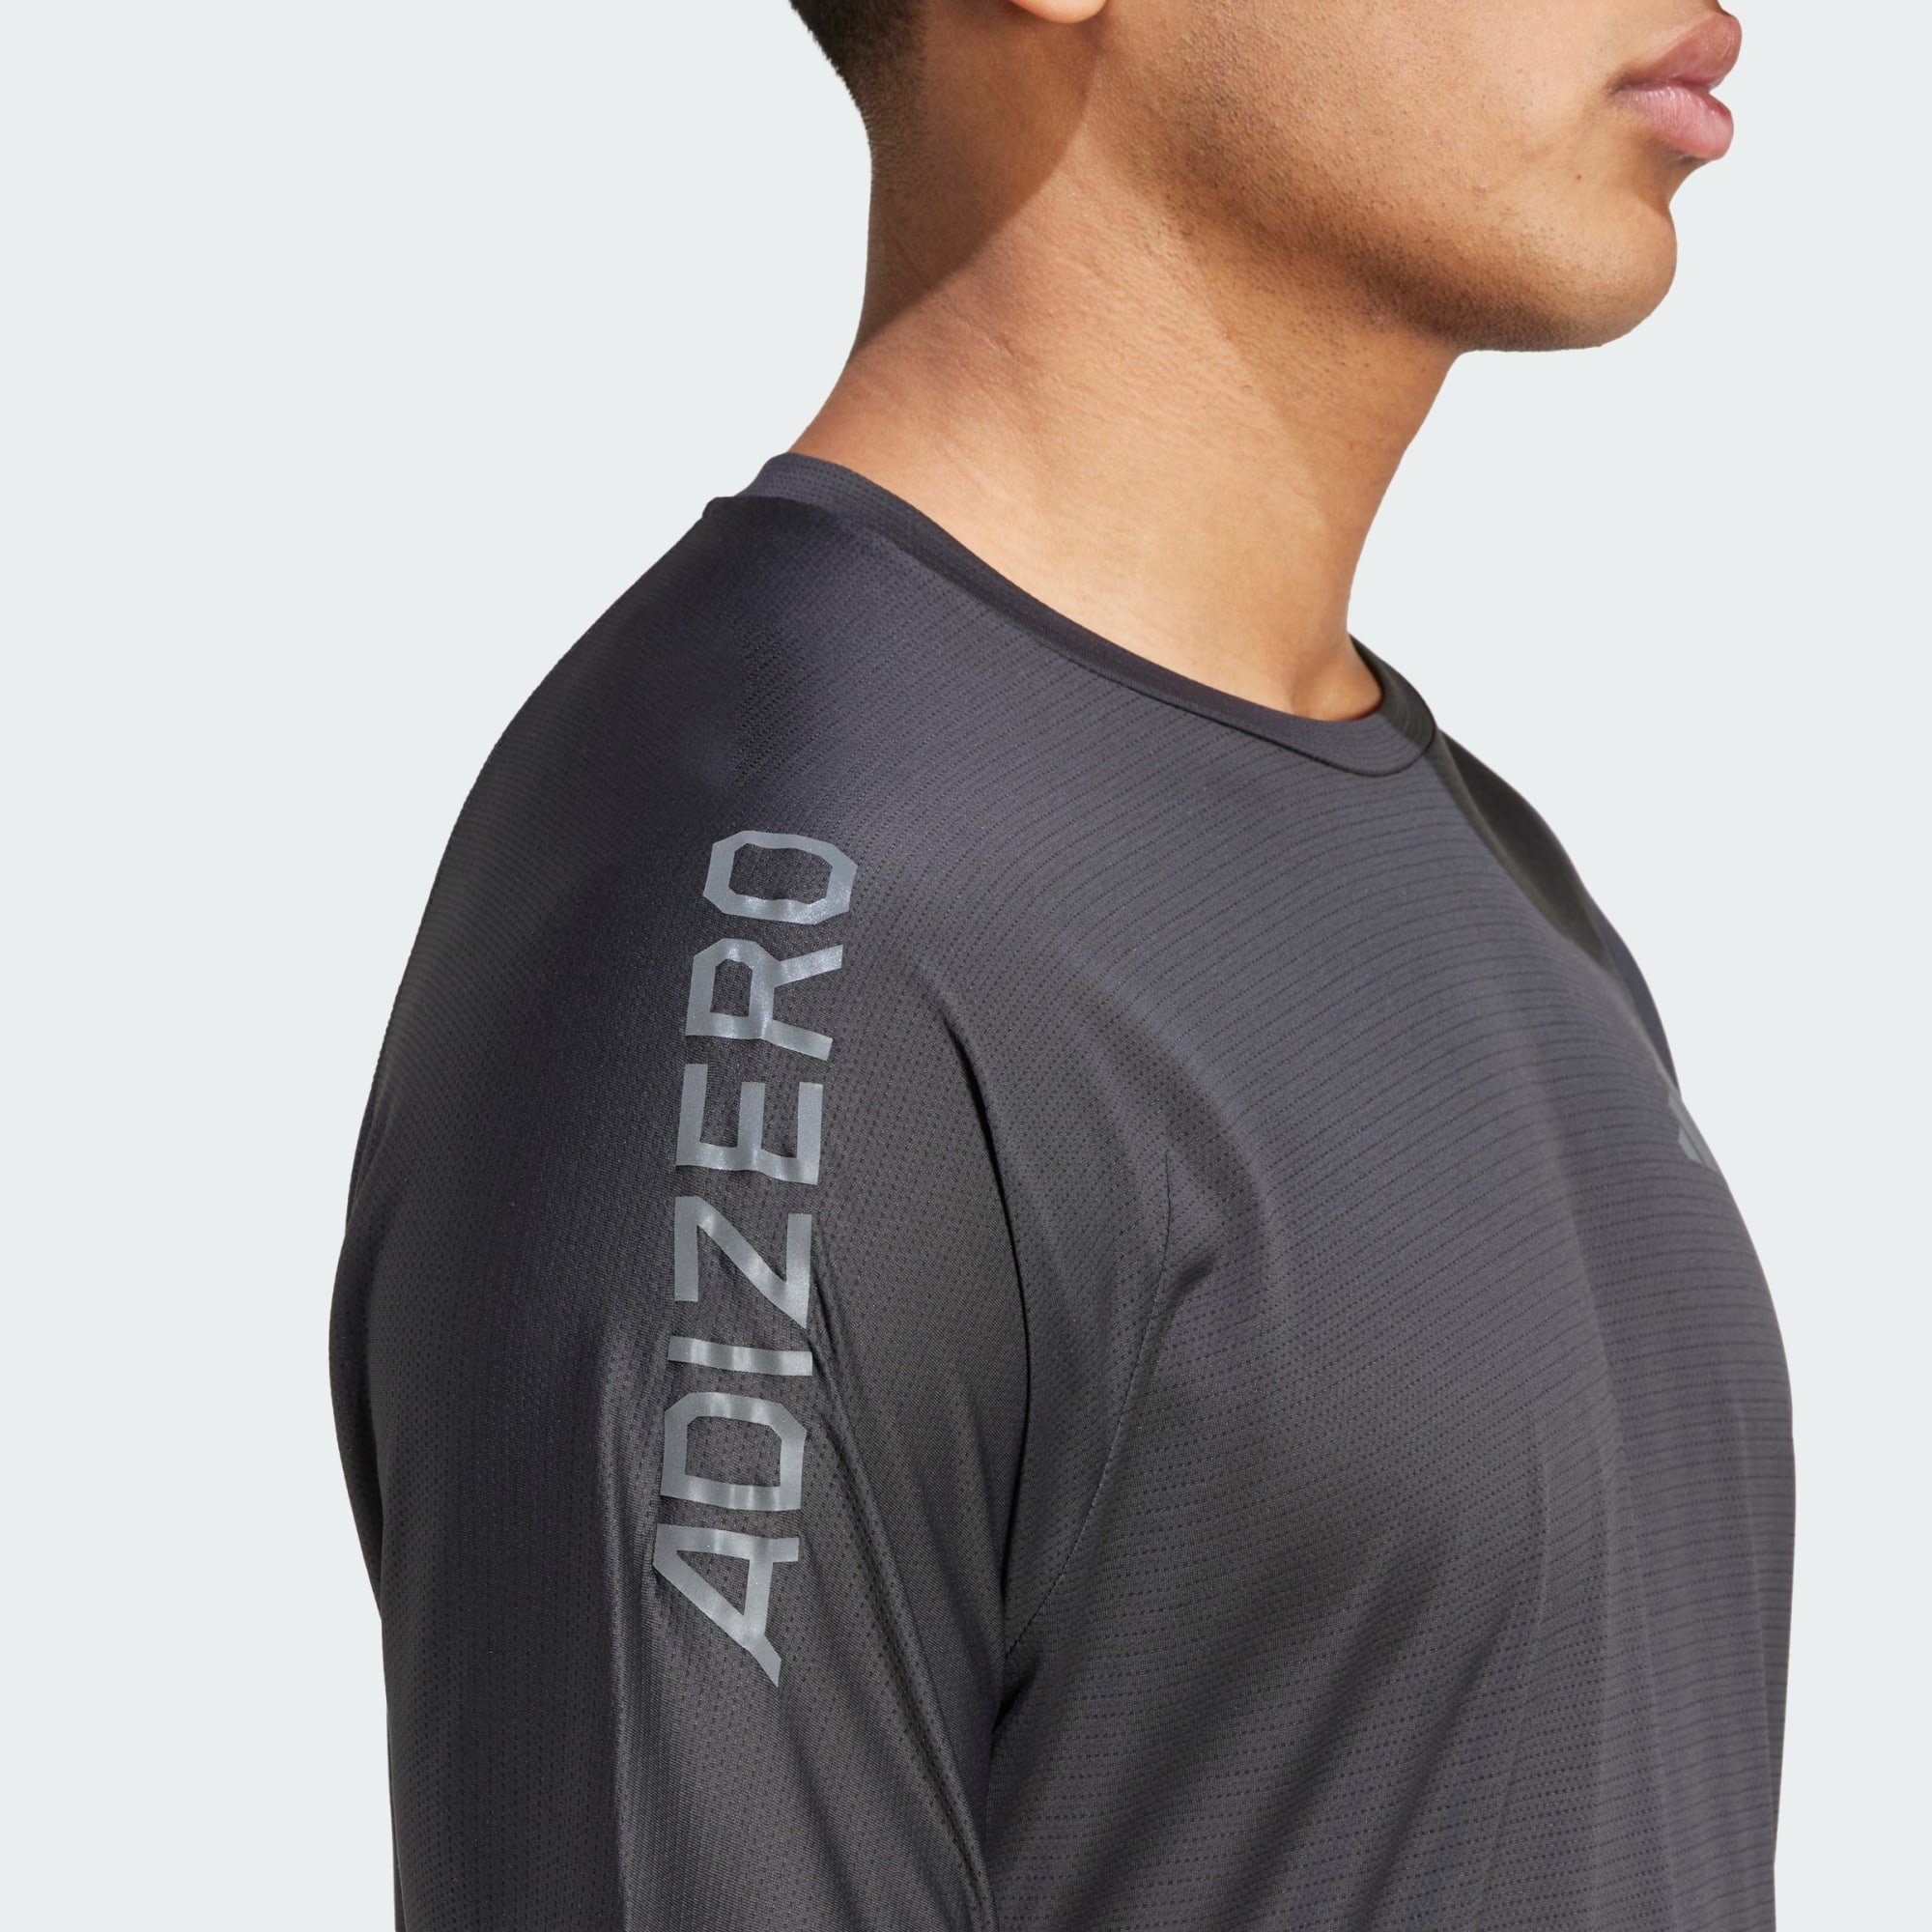 Black T-SHIRT / ADIZERO Six RUNNING Performance Laufshirt Grey adidas